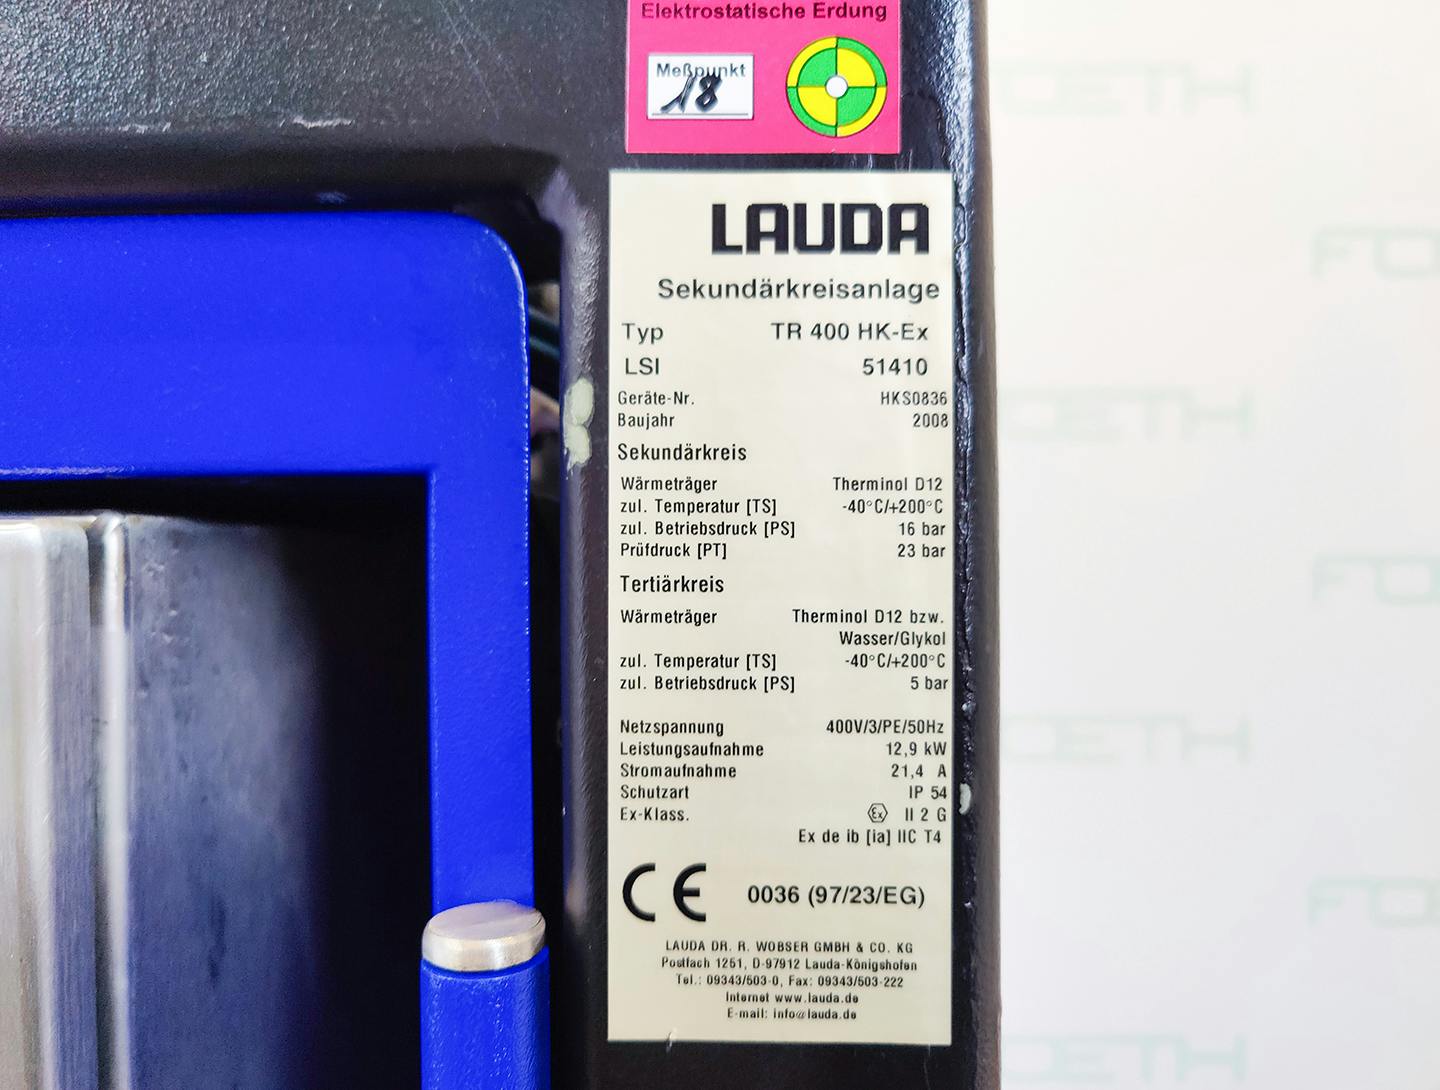 Lauda TR400 HK-EX "secondary circuit system" - Atemperador - image 7